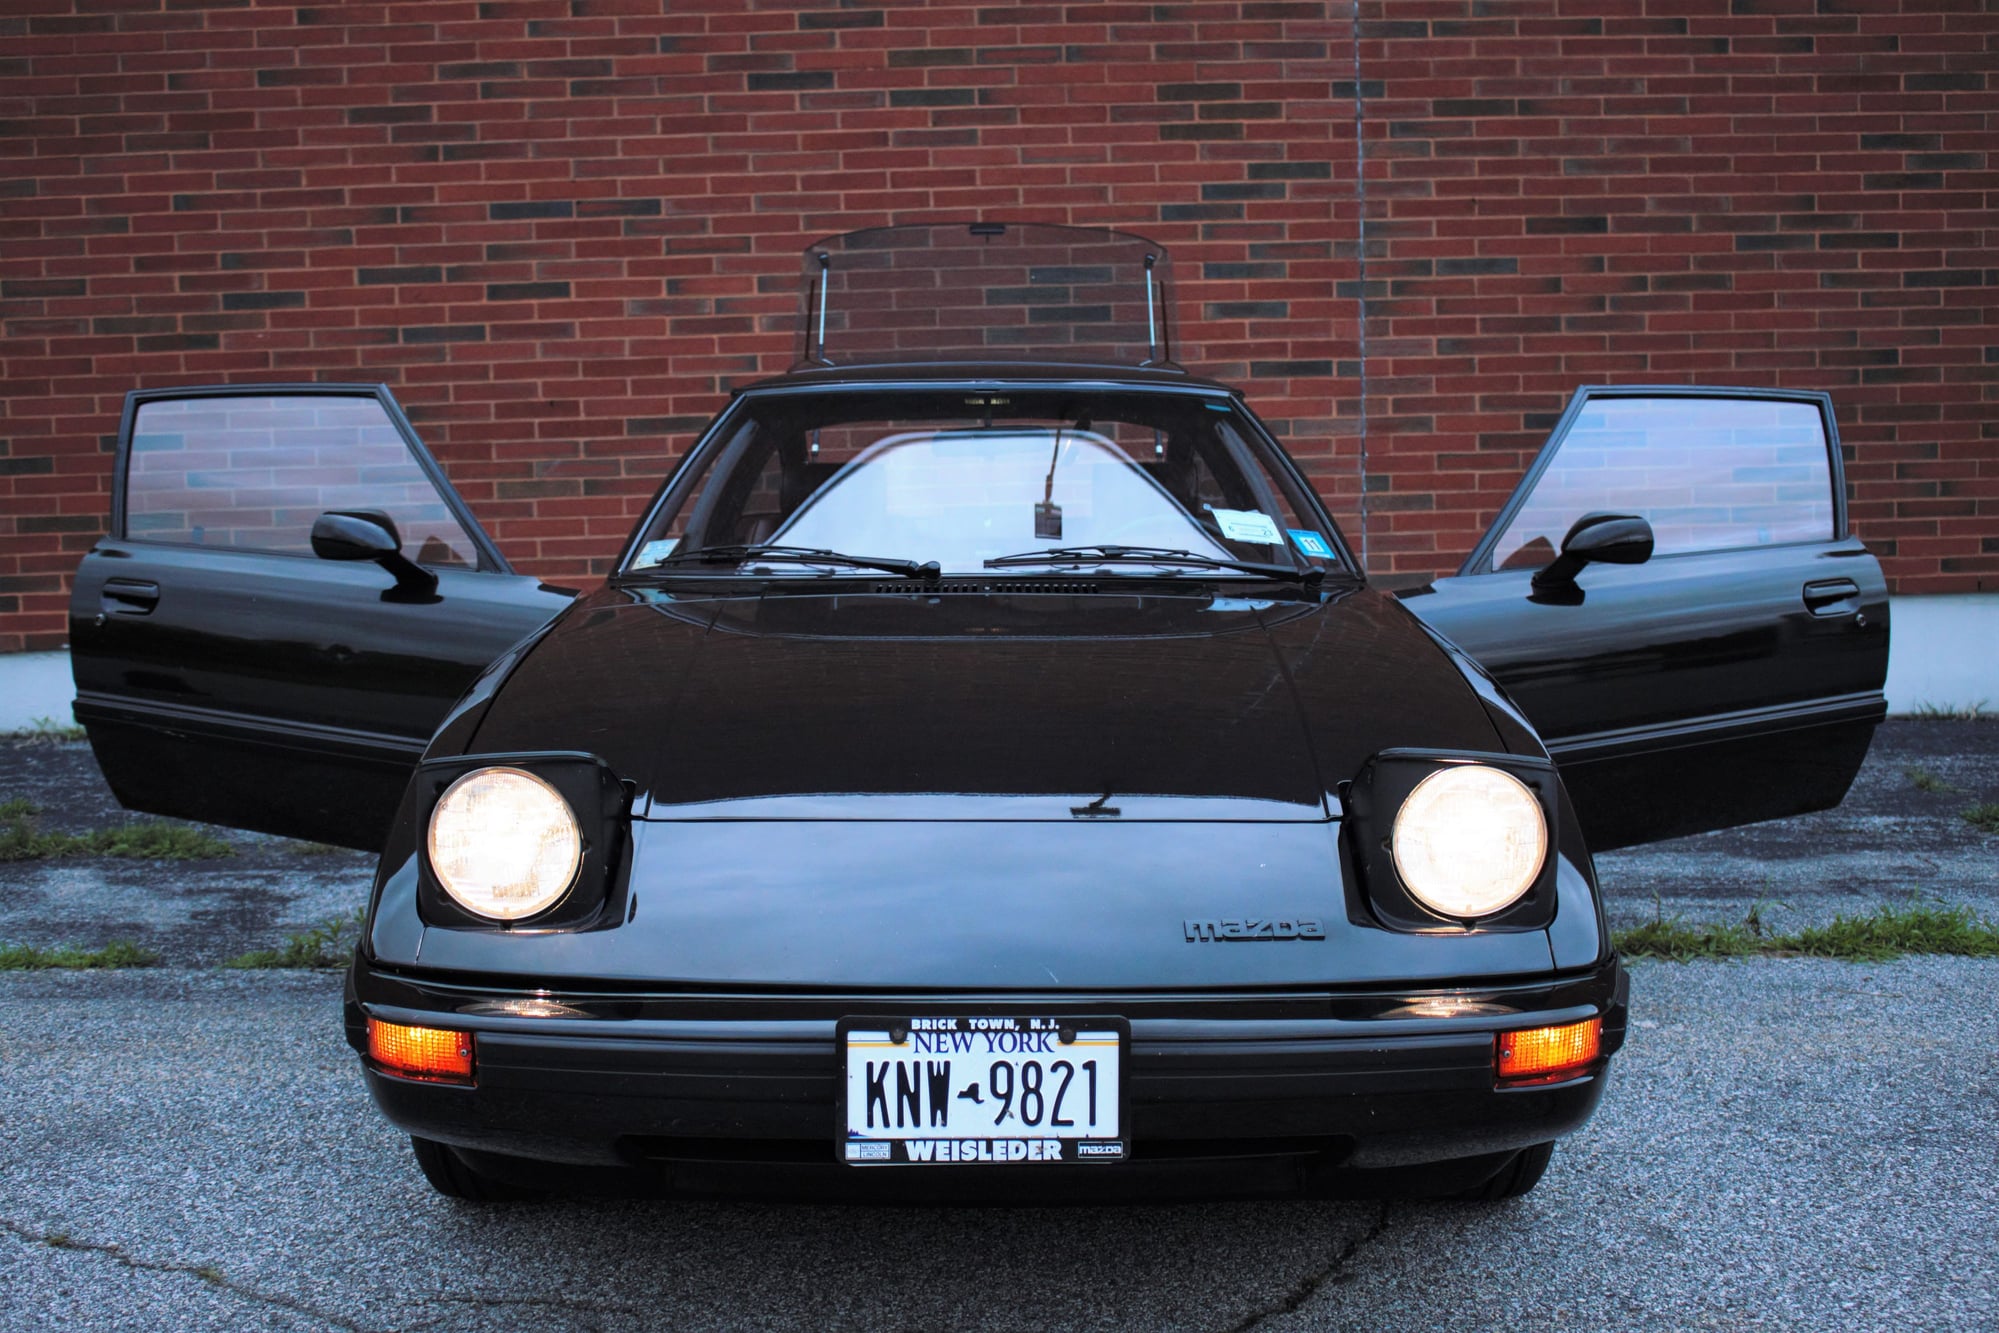 1983 Mazda RX-7 - 1983 Mazda RX-7 GS - 14K Miles - $15,000 - Used - VIN JM1FB331XD0705517 - 13,950 Miles - Other - 2WD - Manual - Coupe - Black - Goshen, NY 10924, United States